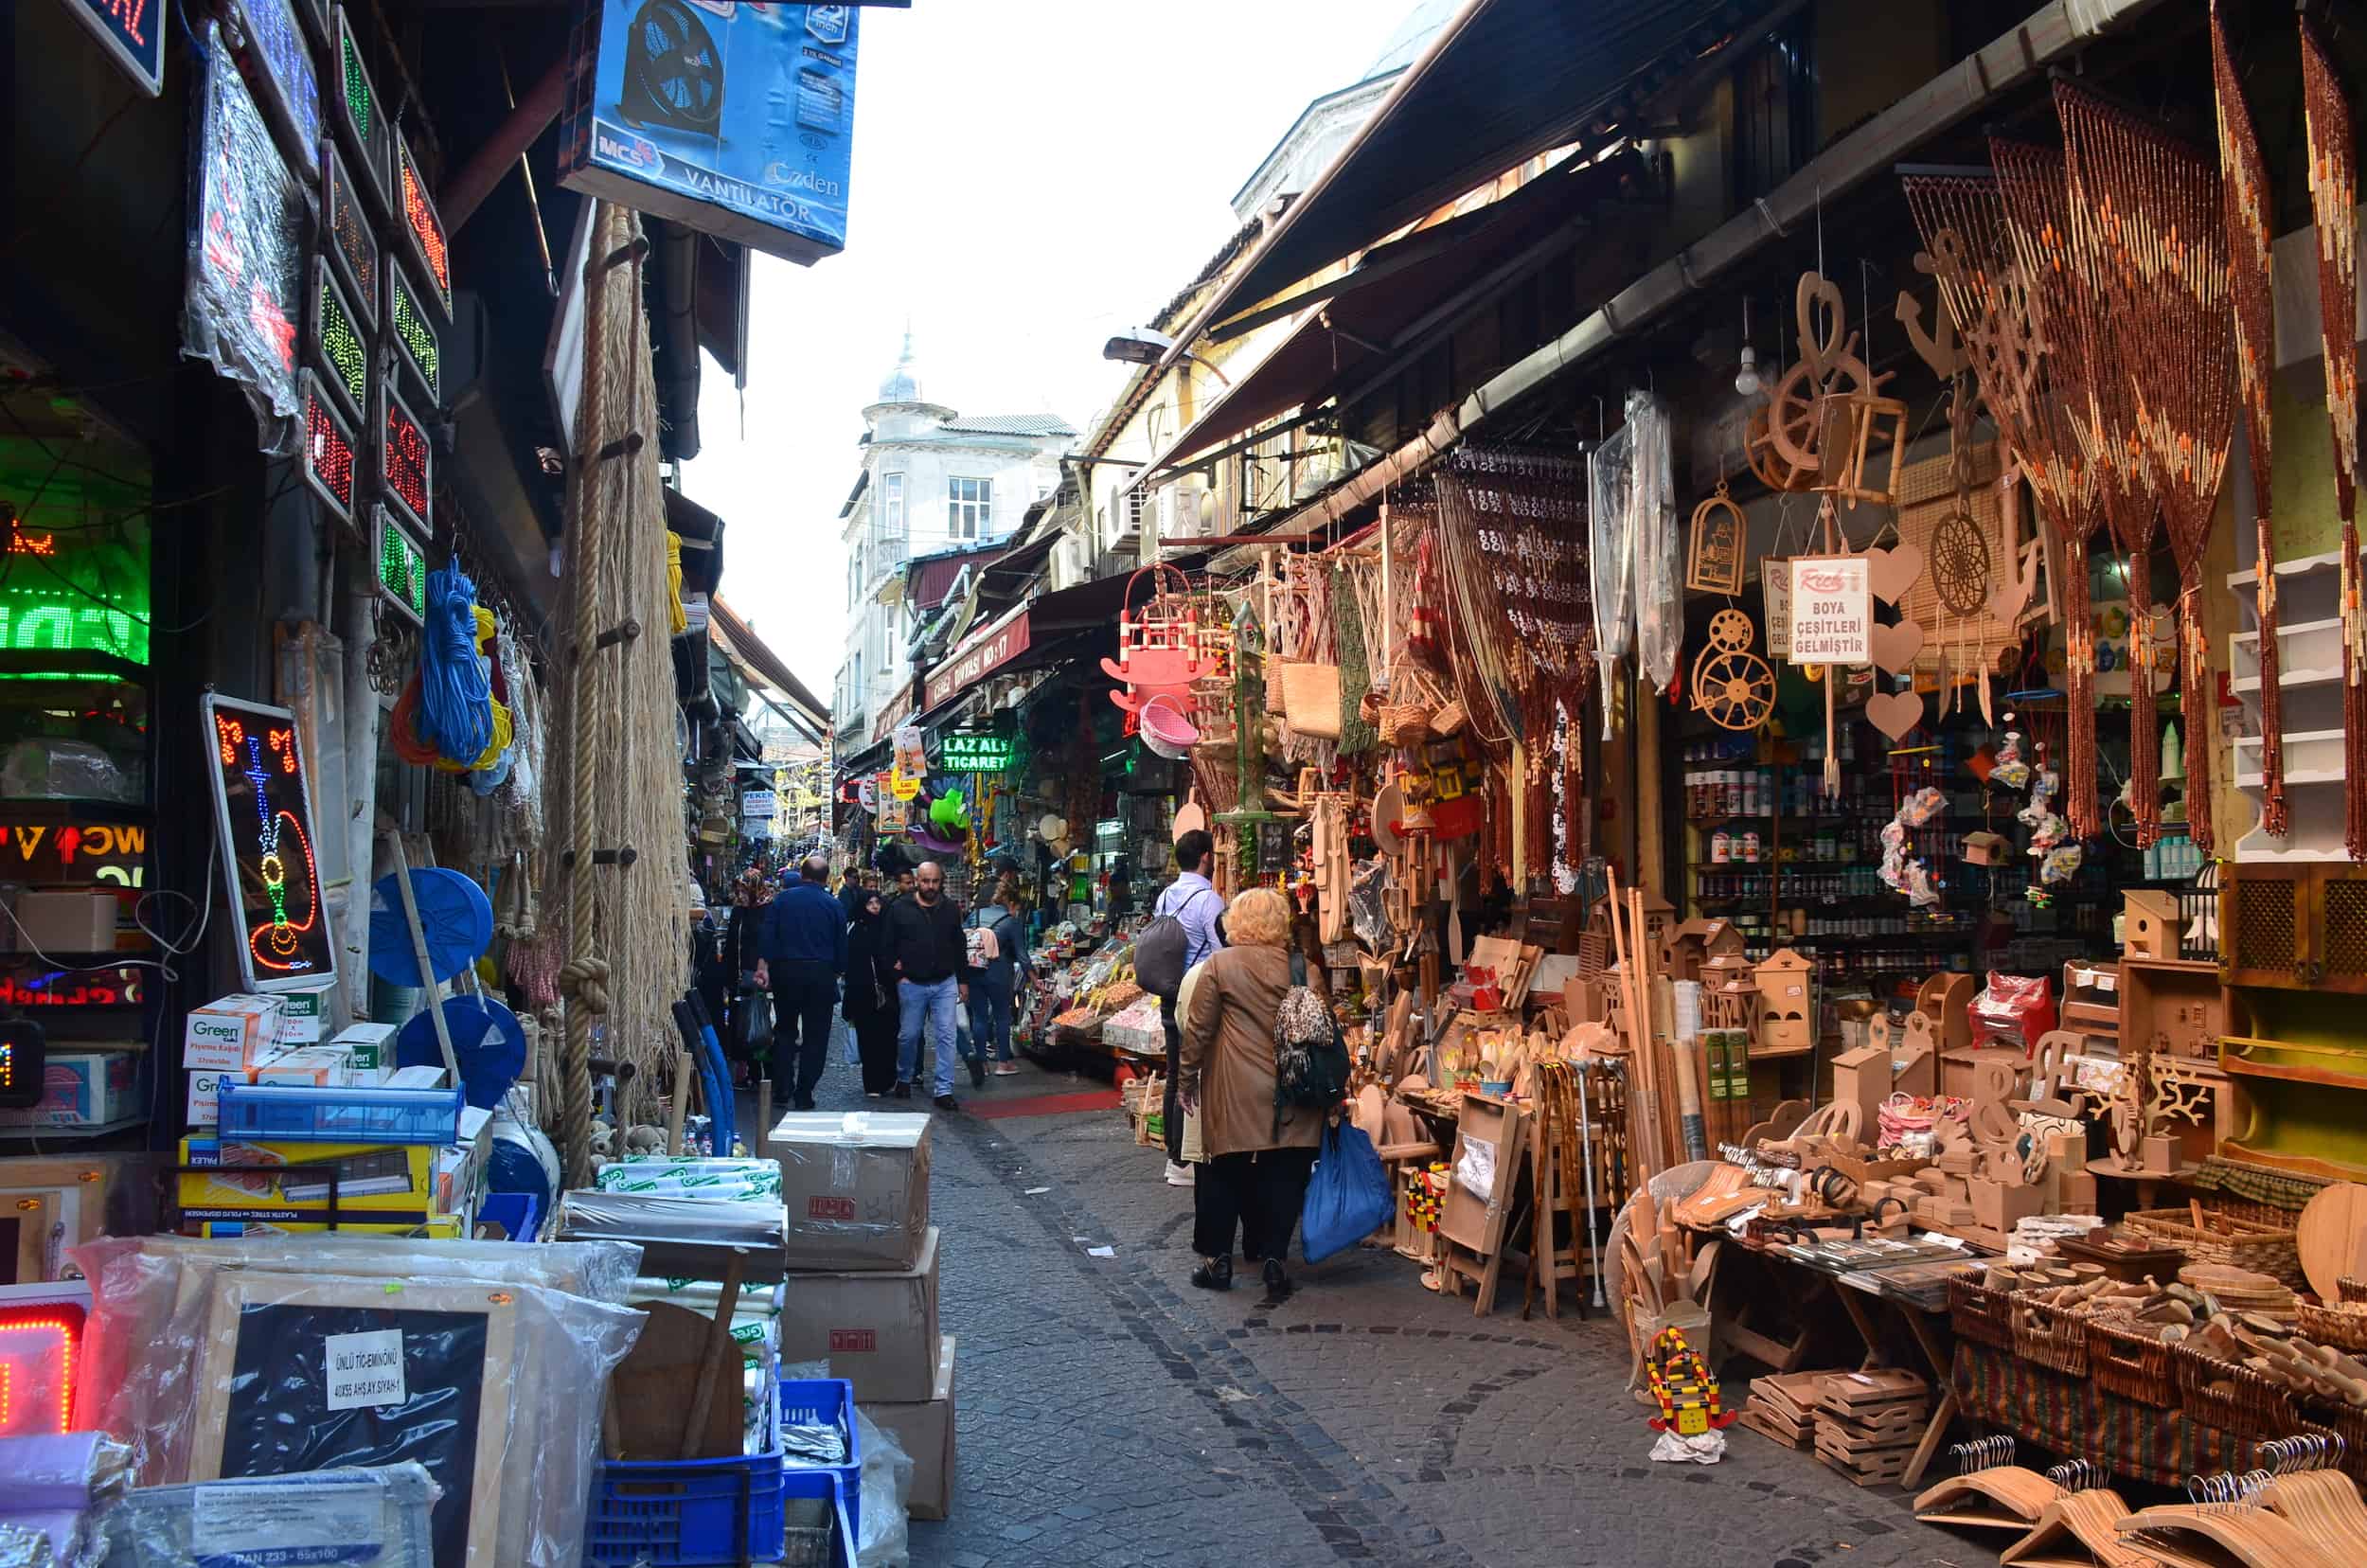 Hasırcılar Street in Tahtakale, Istanbul, Turkey